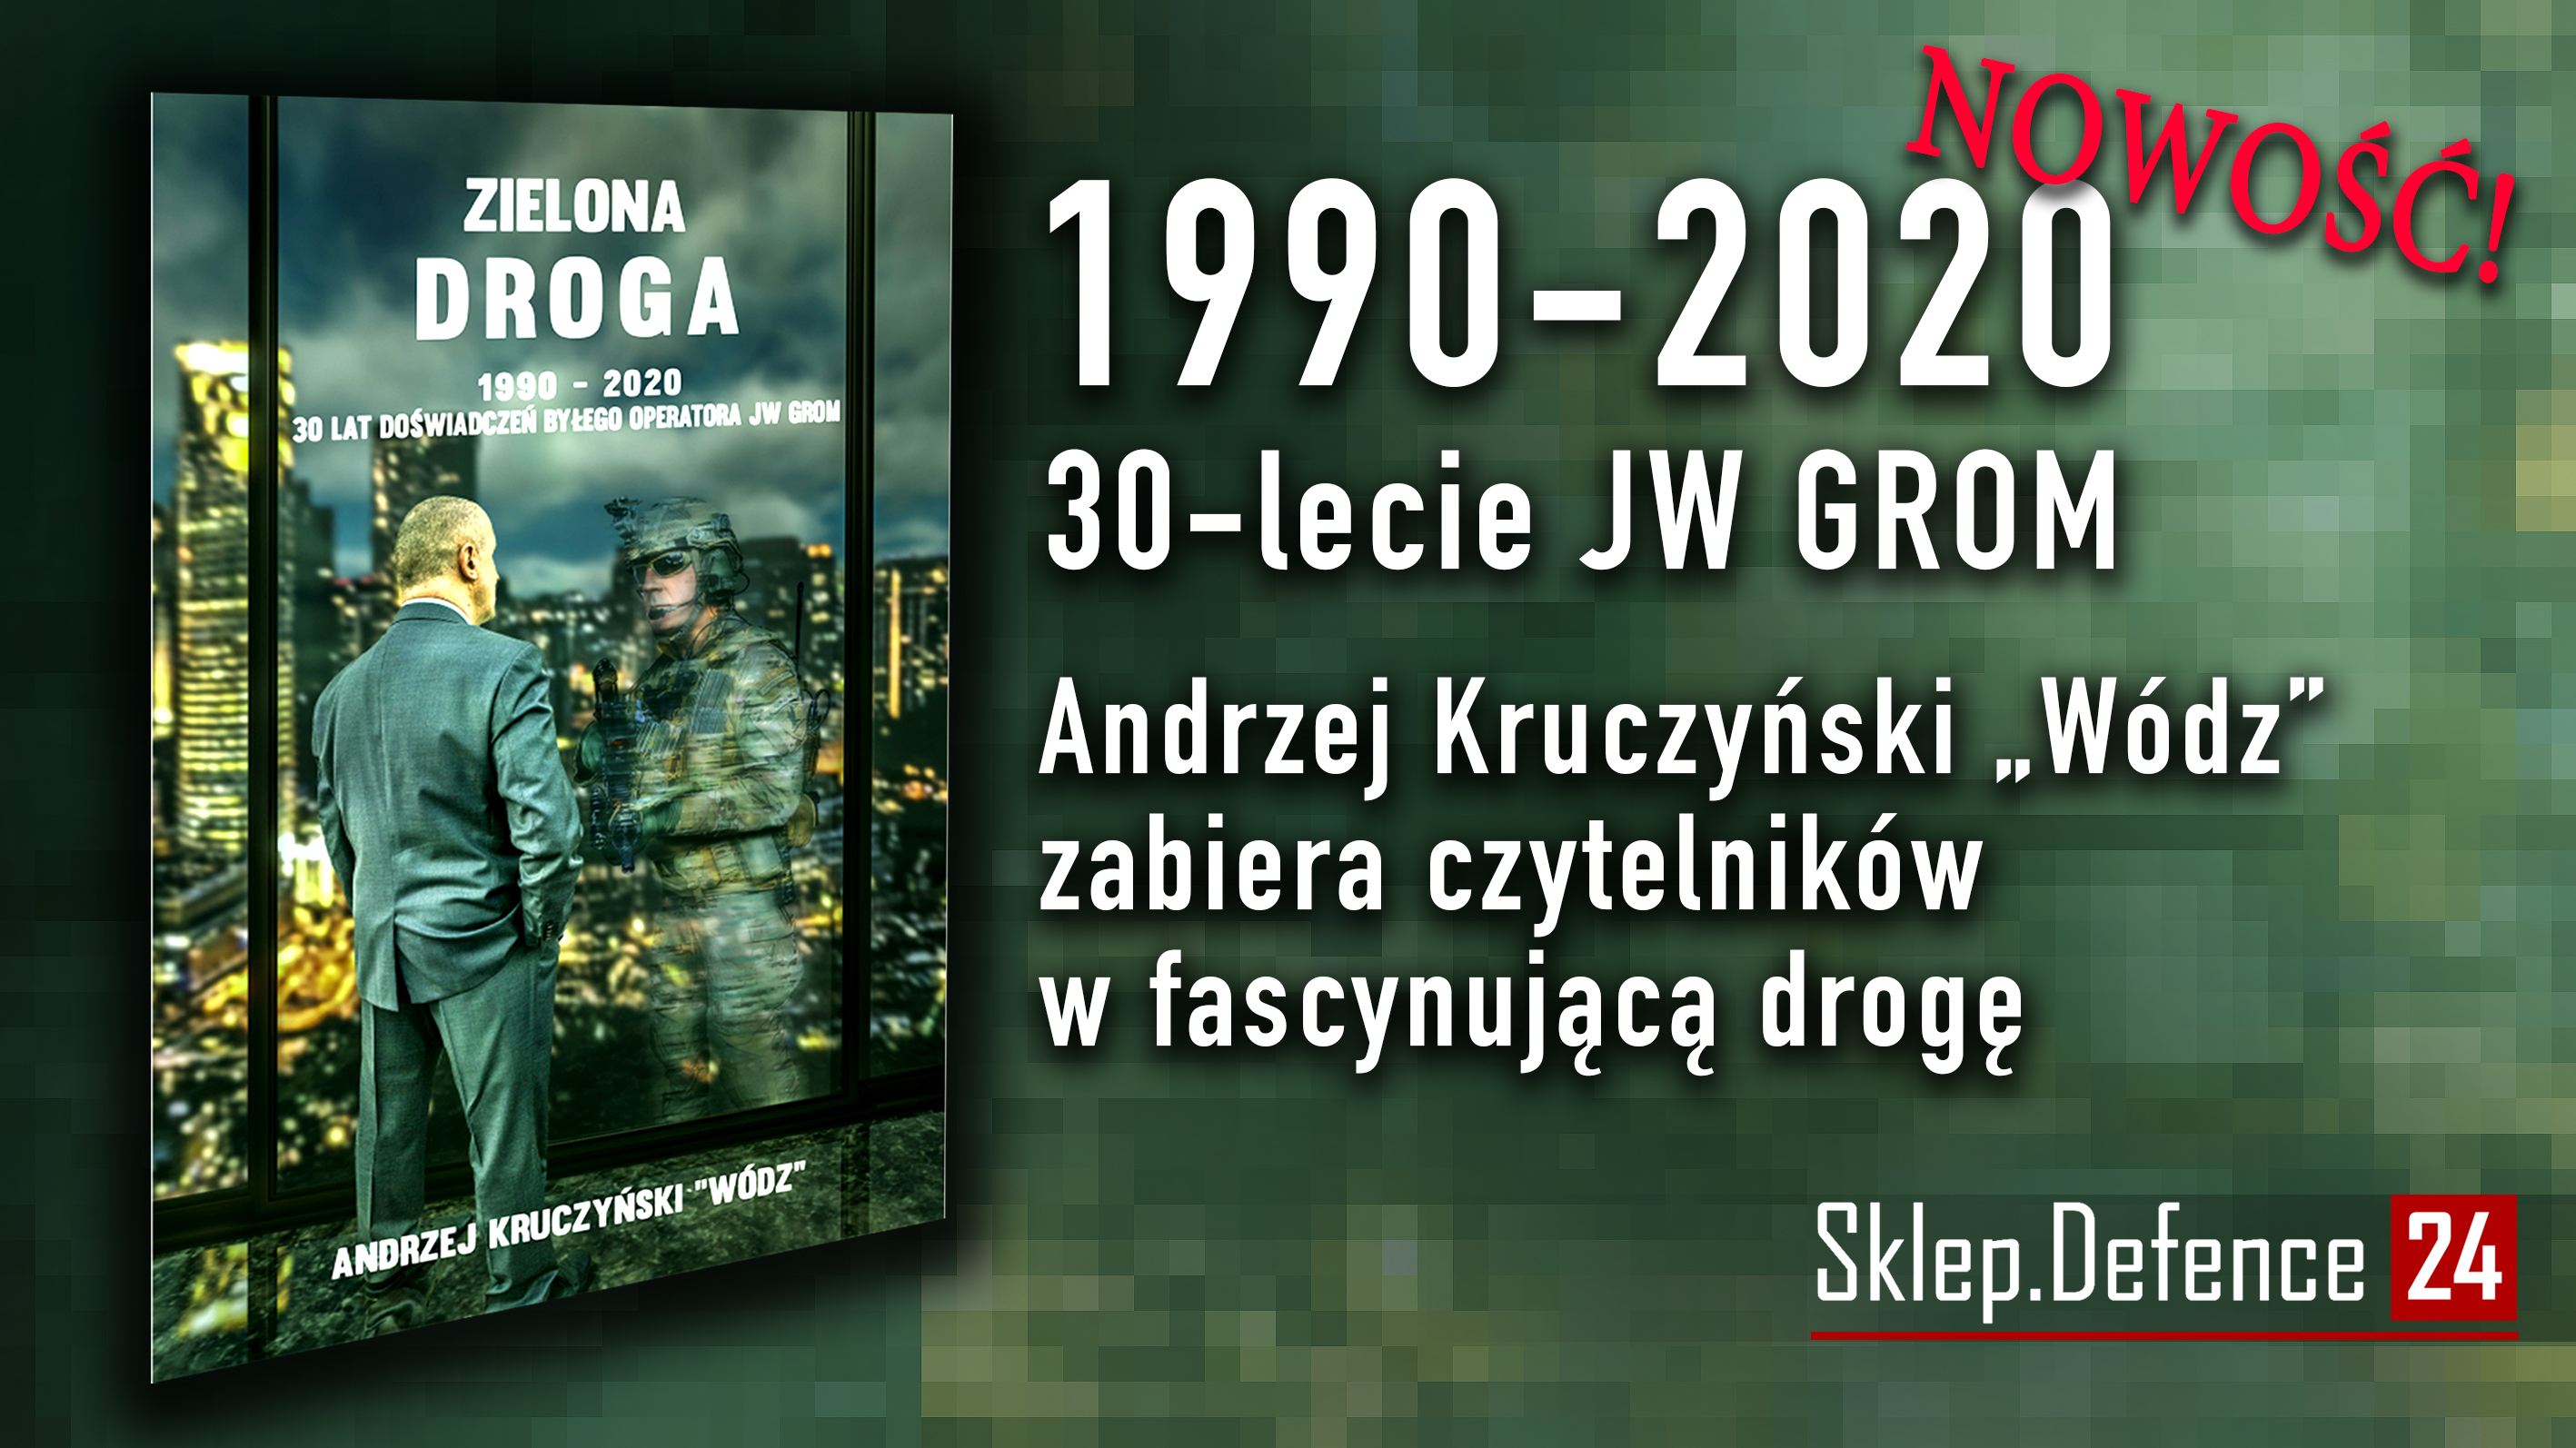 Reklama
link: https://sklep.defence24.pl/produkt/zielona-droga-1990-2020-30-lat-doswiadczenia-bylego-operatora-jw-grom/